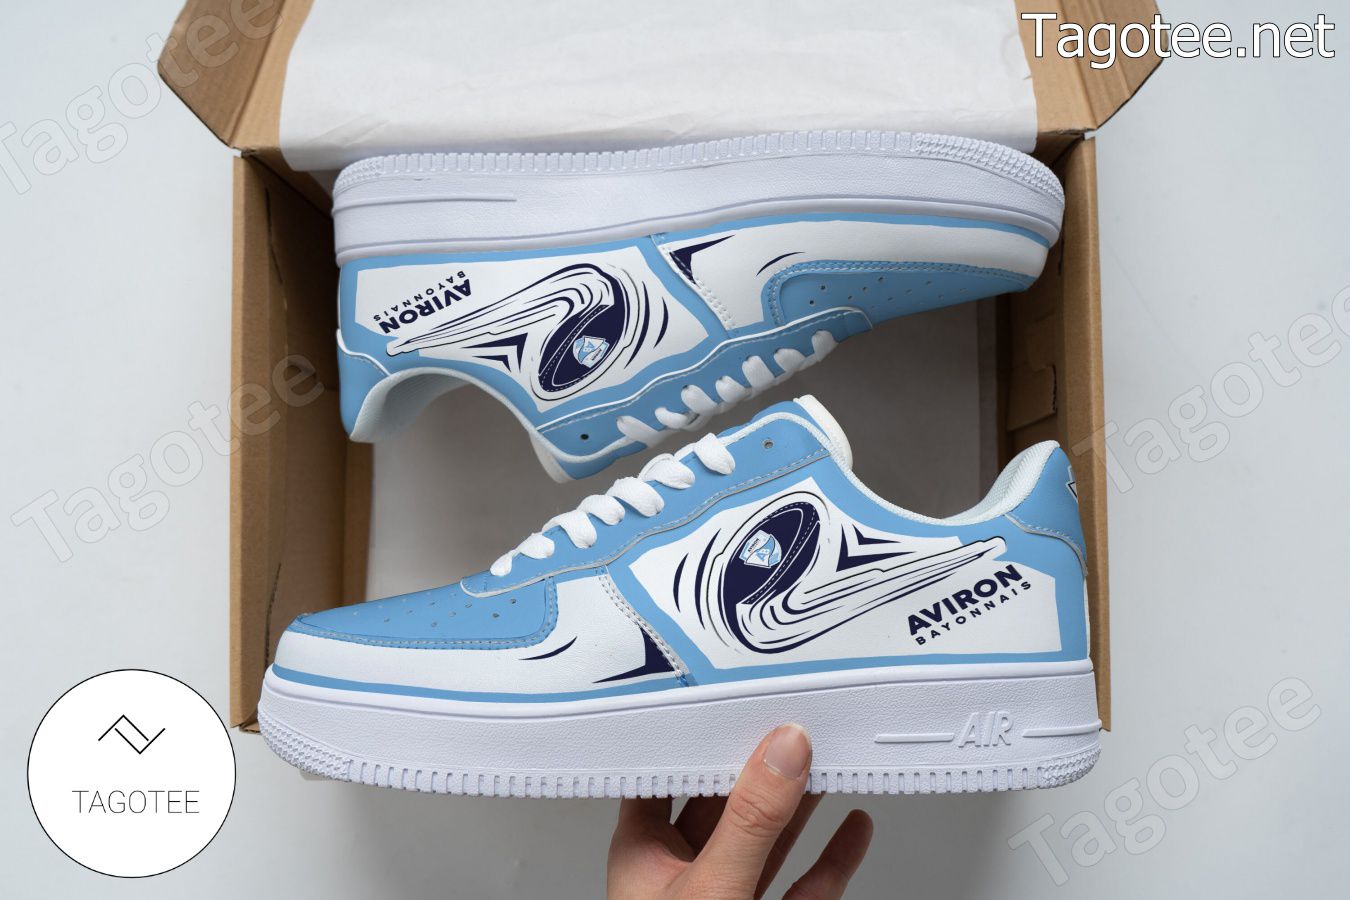 Aviron Bayonnais Logo Air Force 1 Shoes a